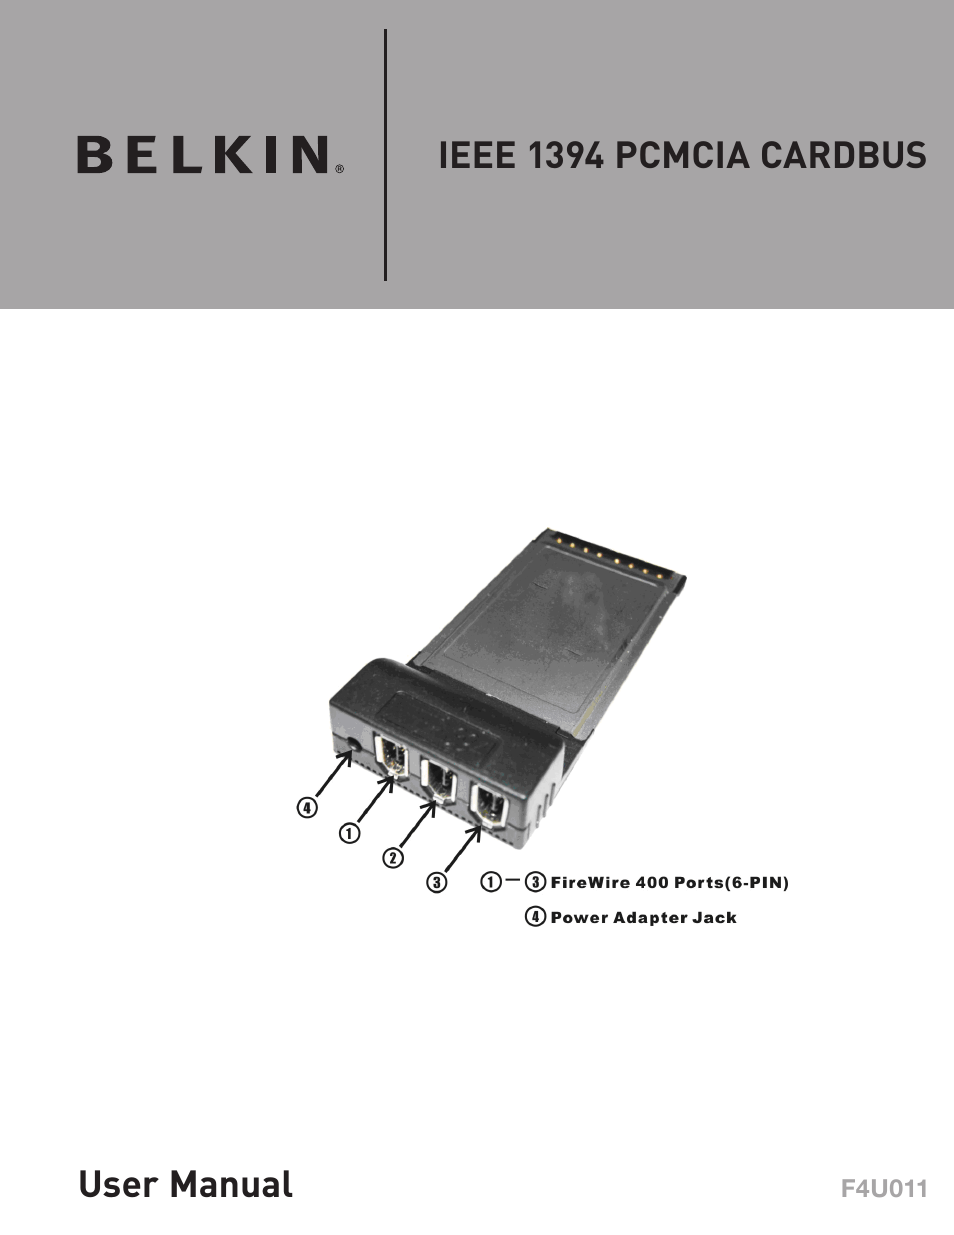 IEEE 1394 PCMCIA Cardbus F4U011